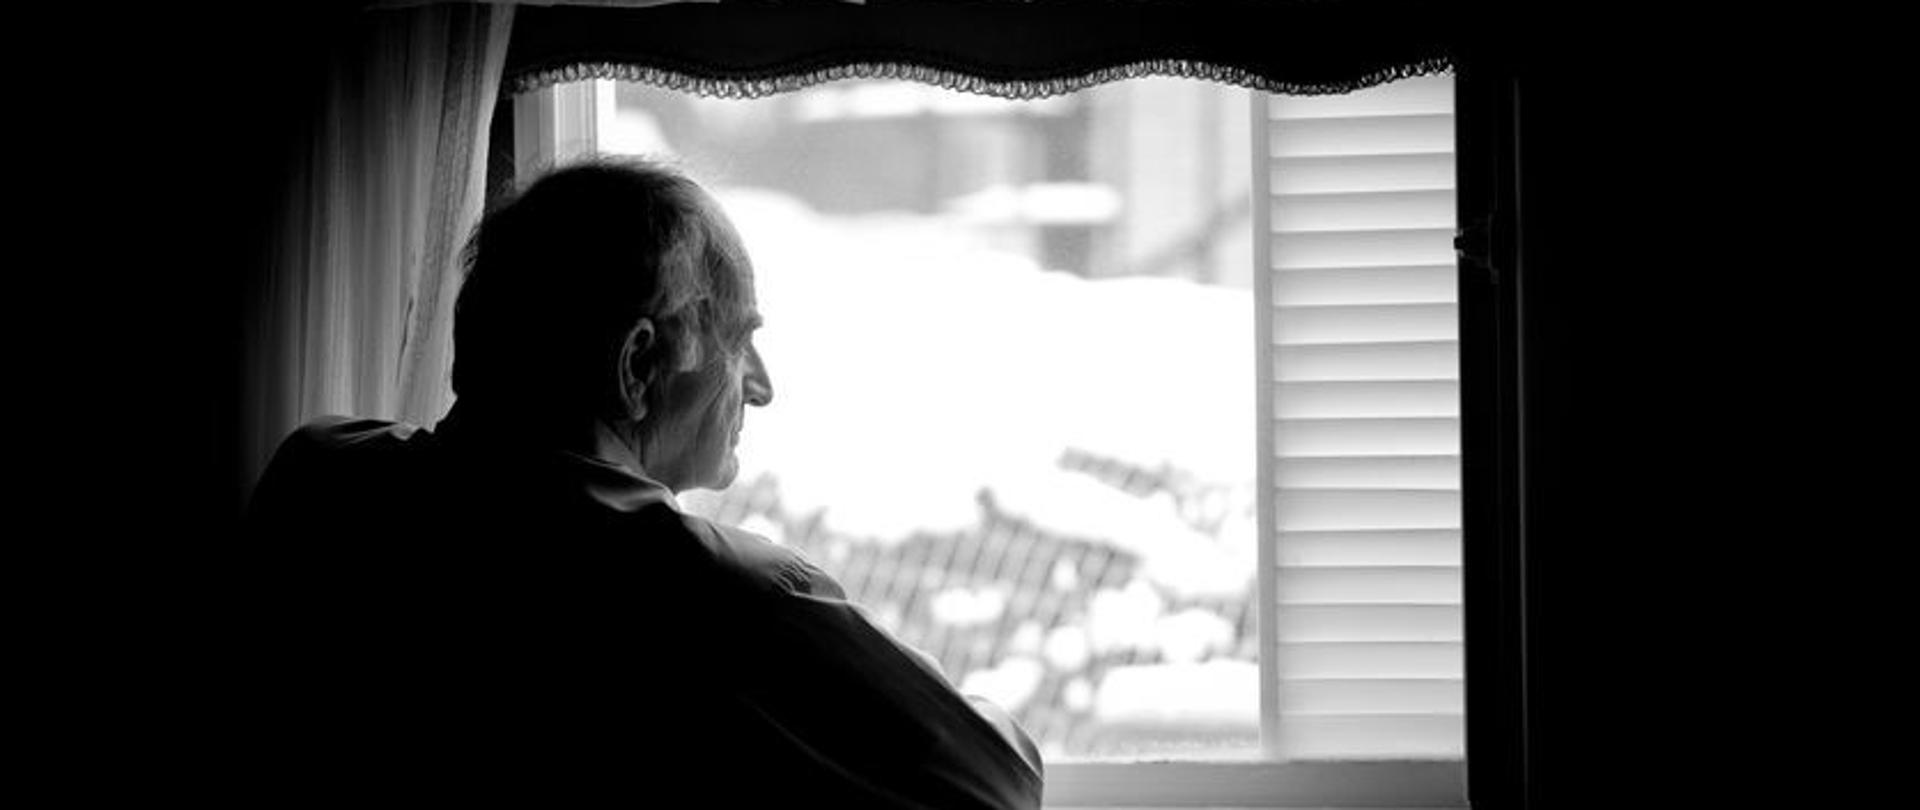 pacjent w depresji patrzy przez okno